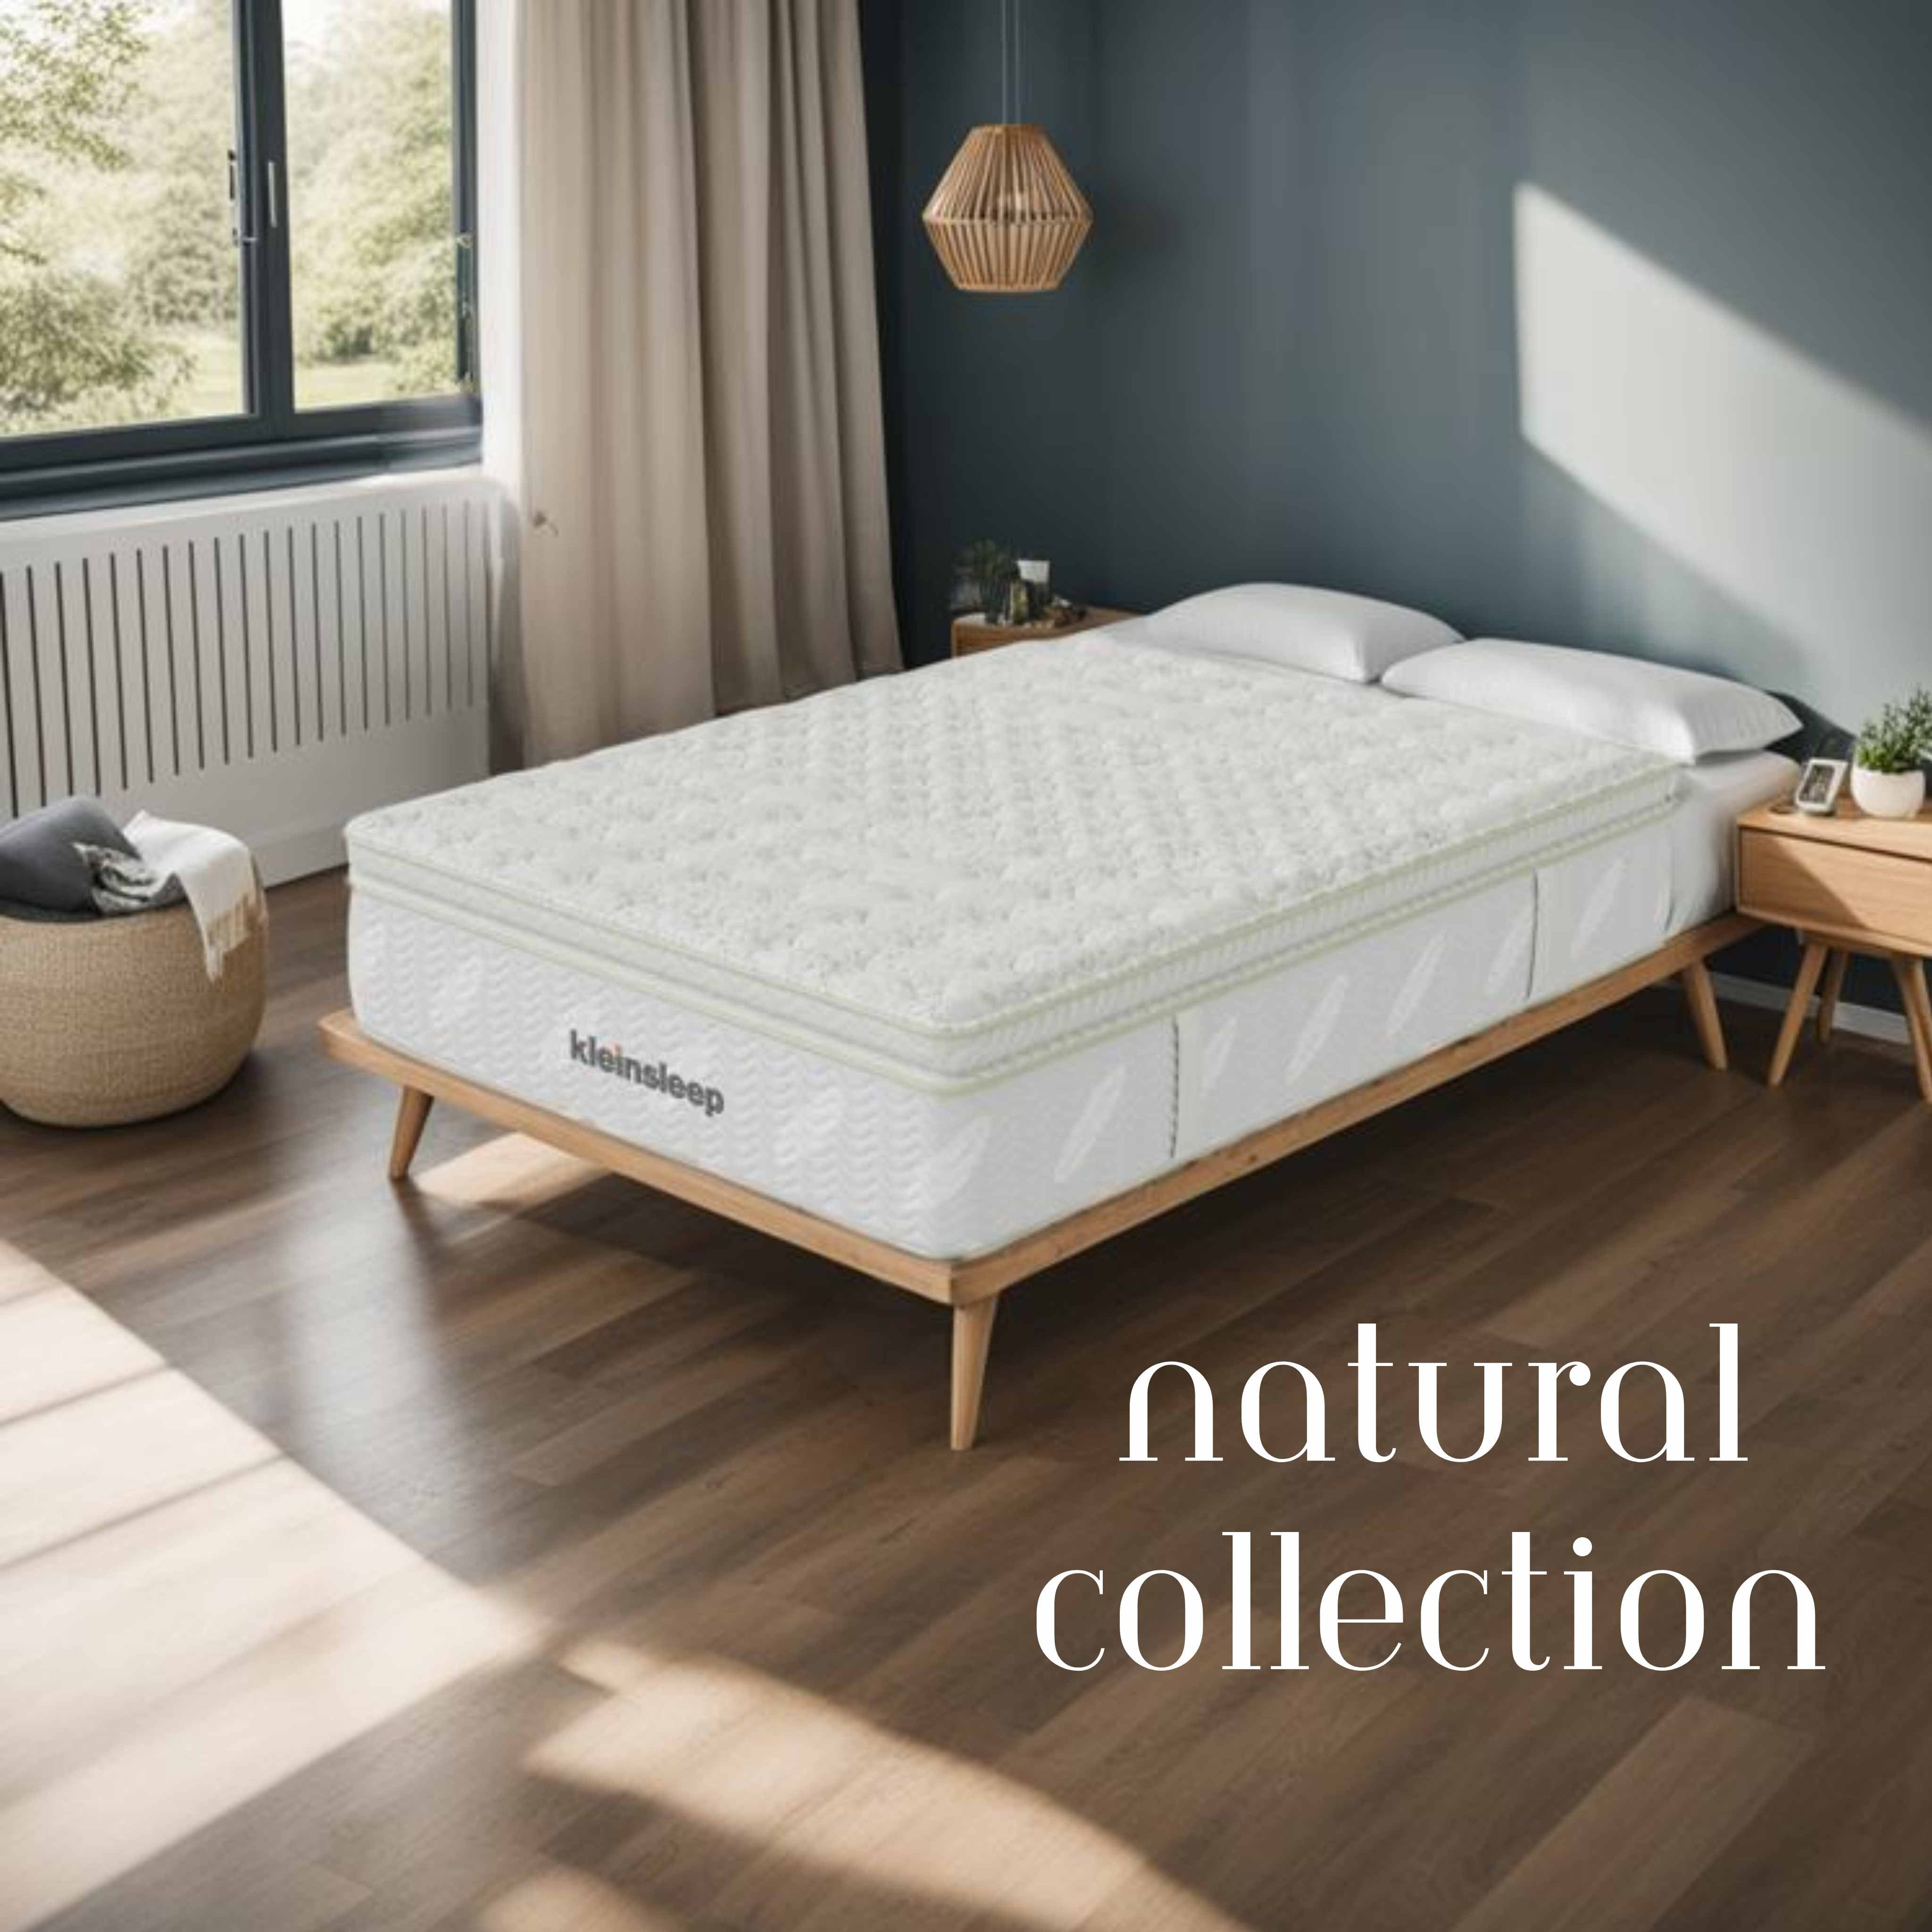 Natural mattress collection